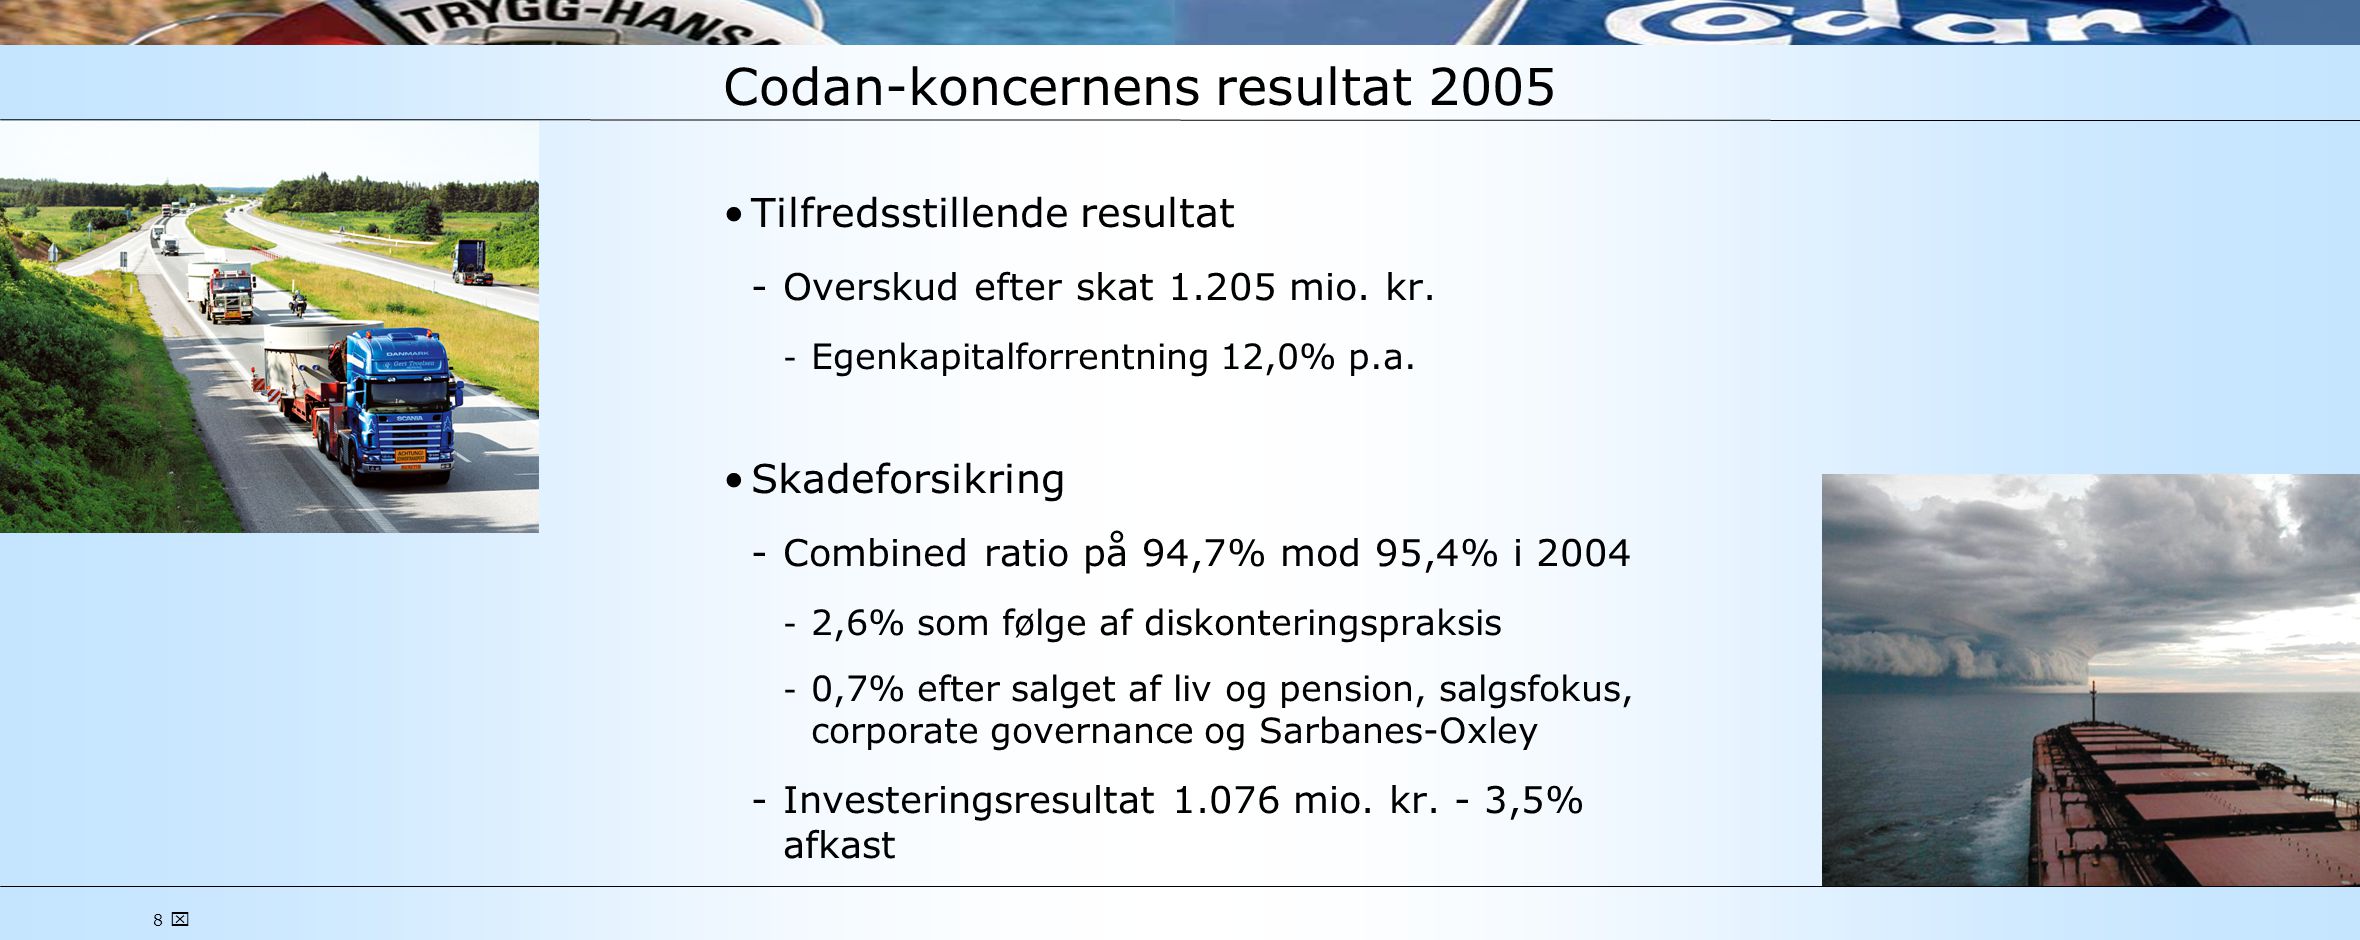 8  Codan-koncernens resultat 2005 •Tilfredsstillende resultat ­Overskud efter skat mio.